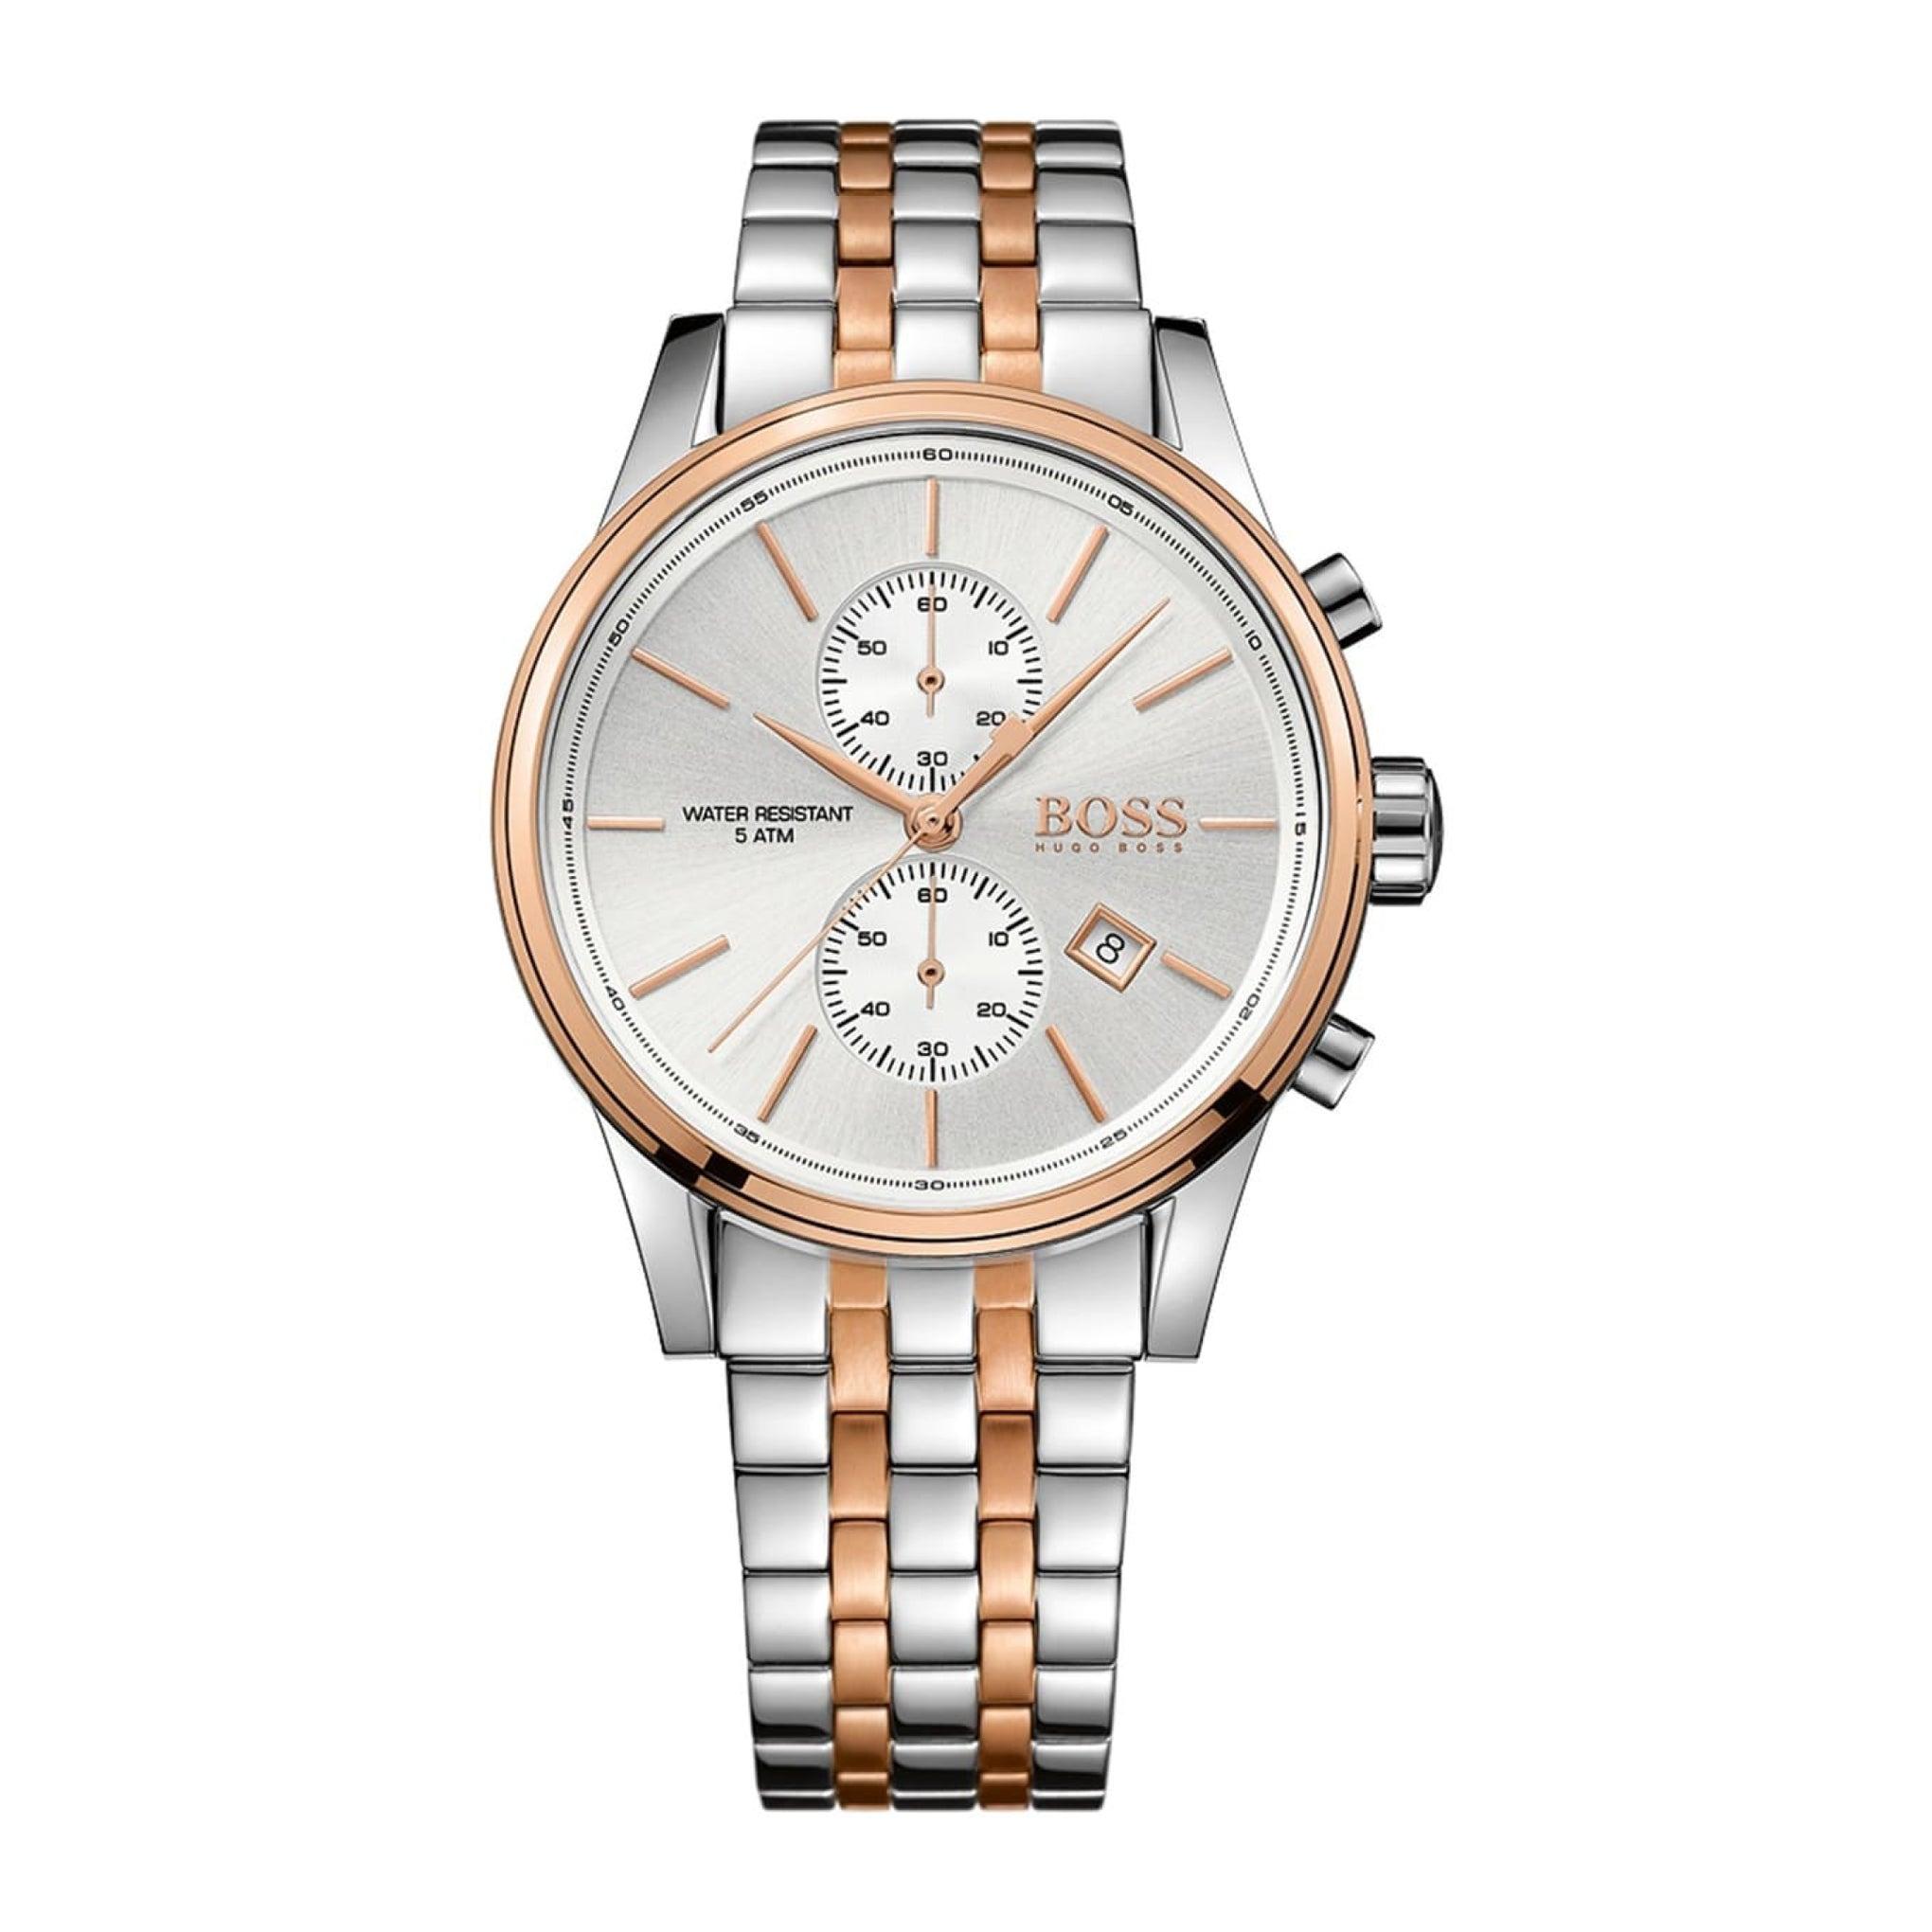 ساعة يد نسائية - فضي و ذهبي وردي - بحزام معدني مقاوم للصدأ هوغو بوسHugo Boss Women's Quartz Chronograph Display And Stainless Steel Strap Watch